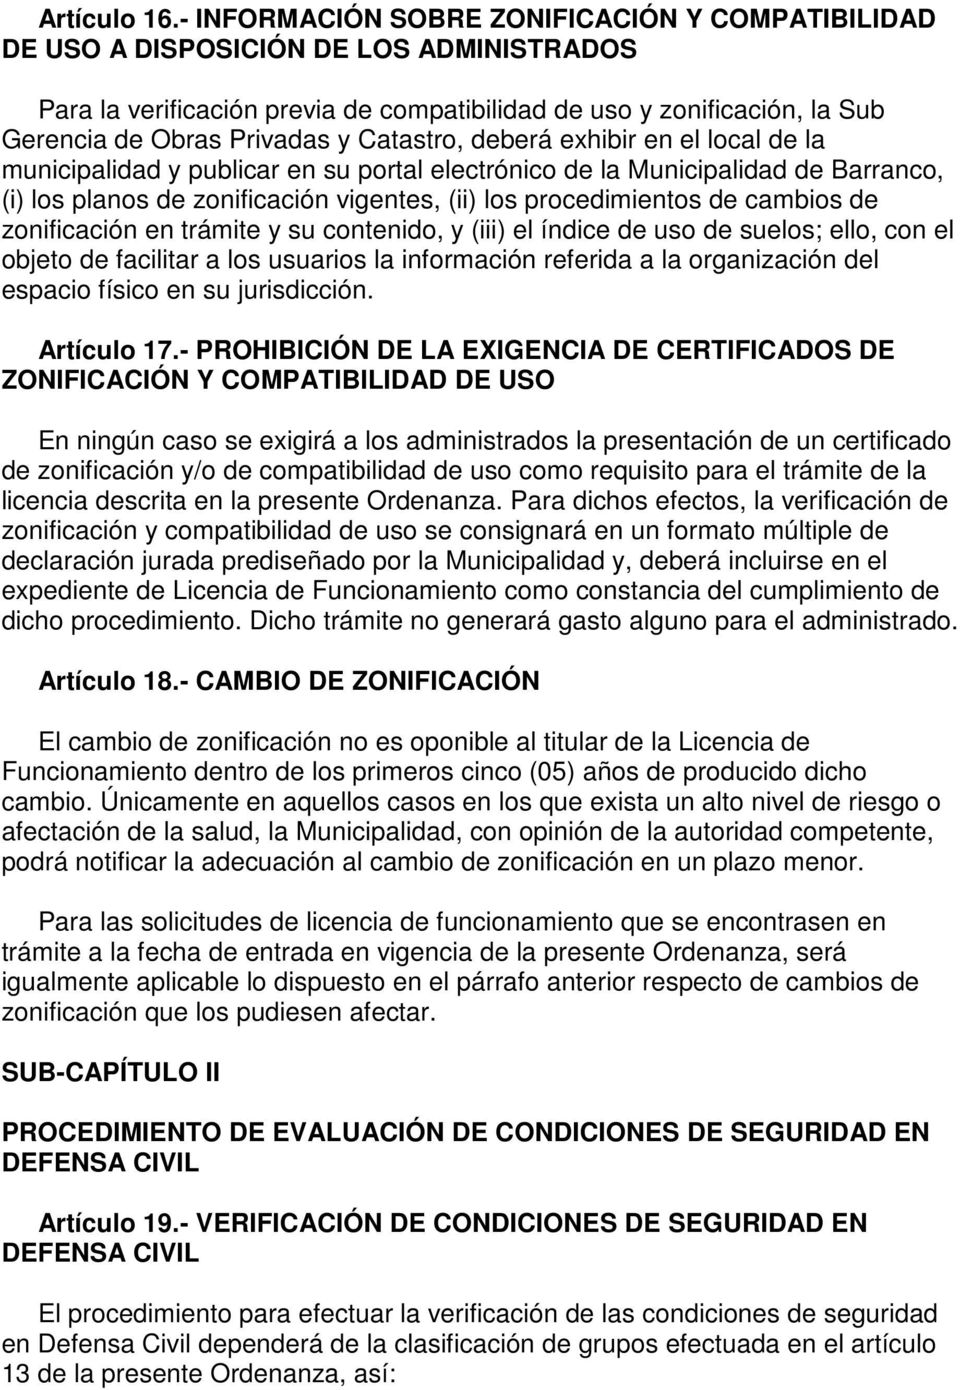 Catastro, deberá exhibir en el local de la municipalidad y publicar en su portal electrónico de la Municipalidad de Barranco, (i) los planos de zonificación vigentes, (ii) los procedimientos de